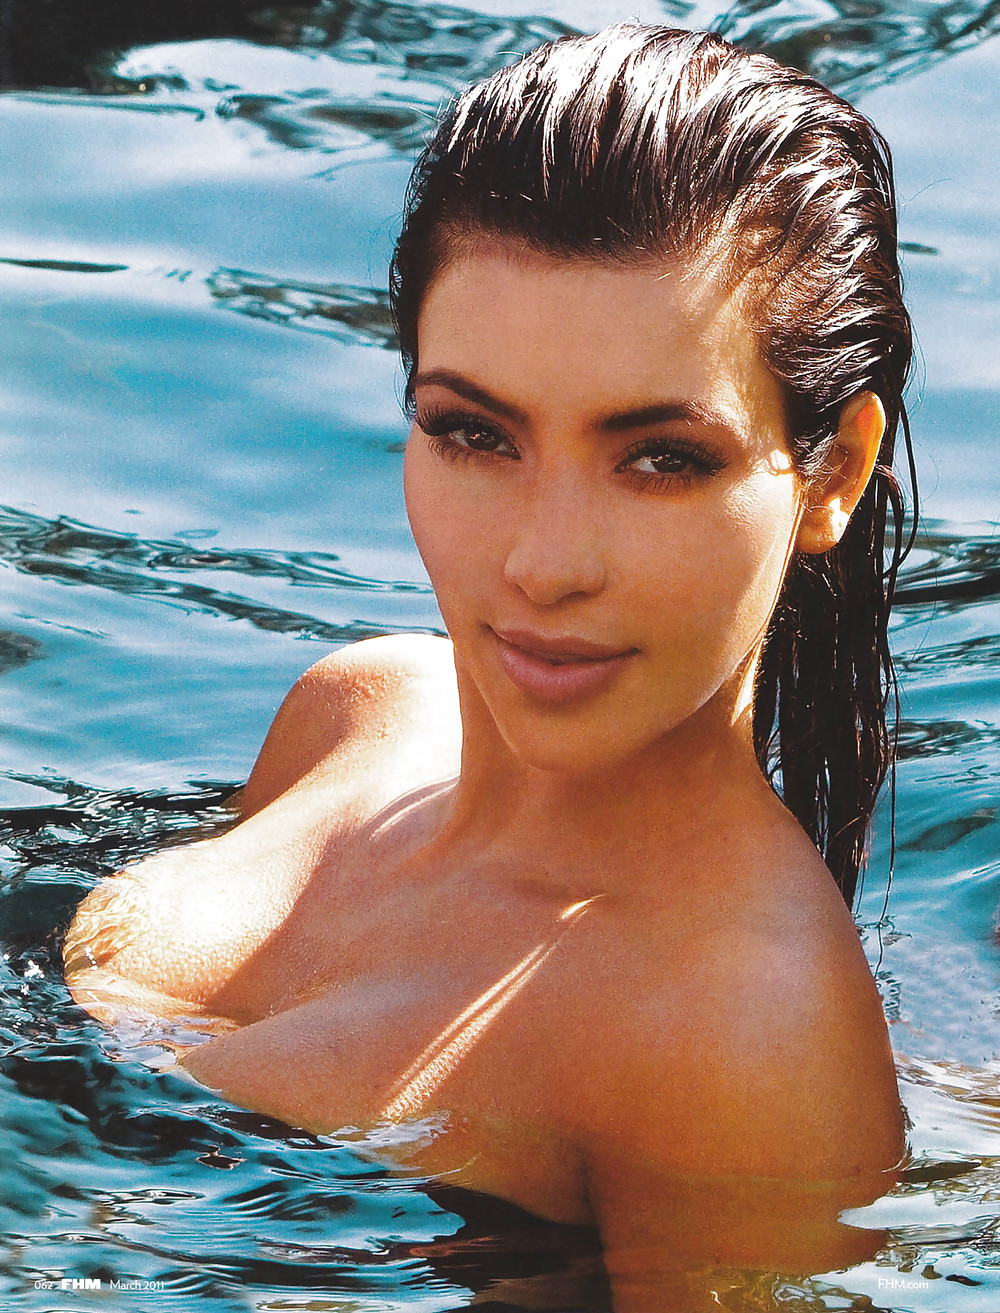 Kim Kardashian at her hottest #36131637